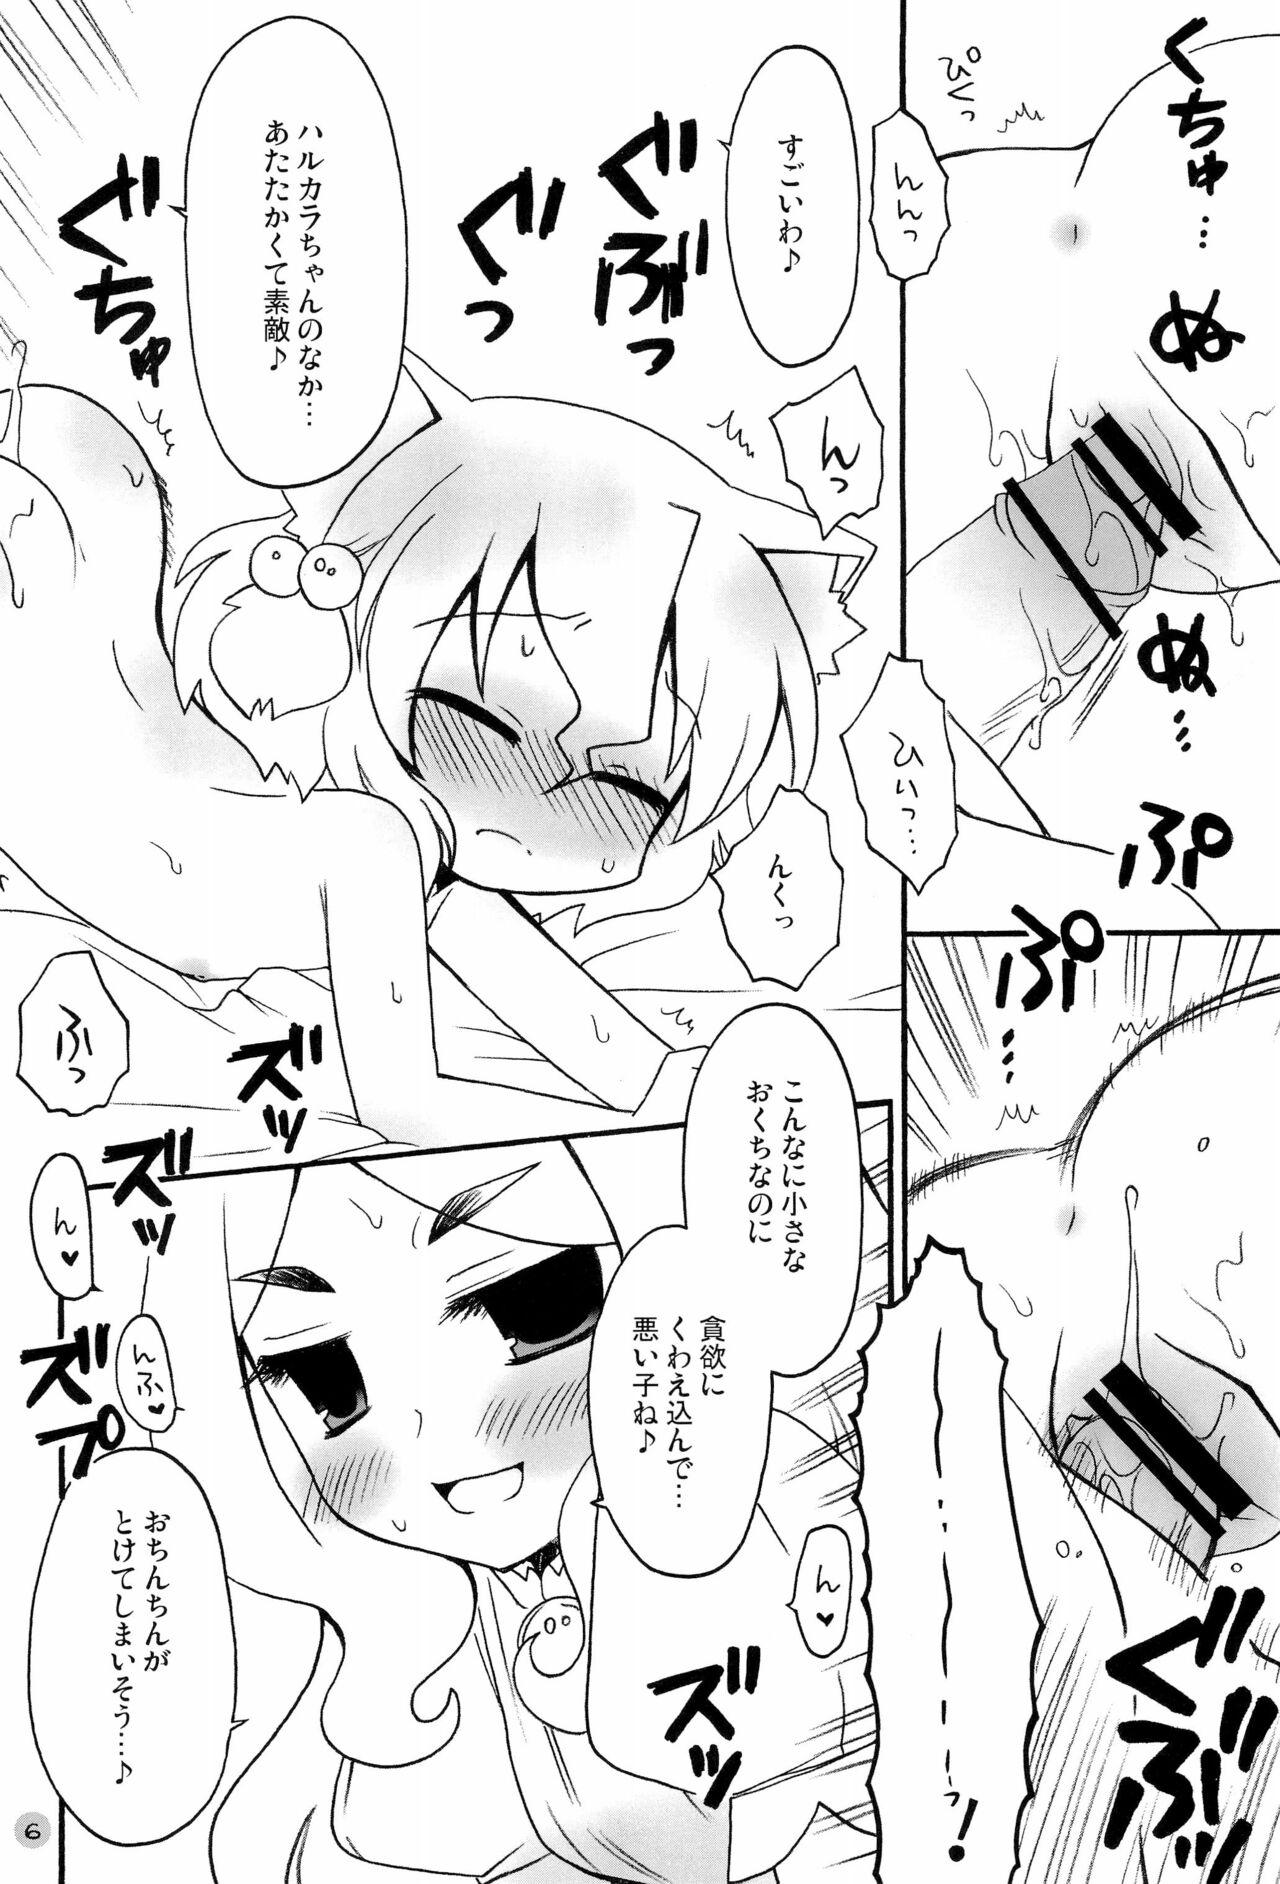 Blacks Harumomo no Tsubomi - 7th dragon Sex - Page 6